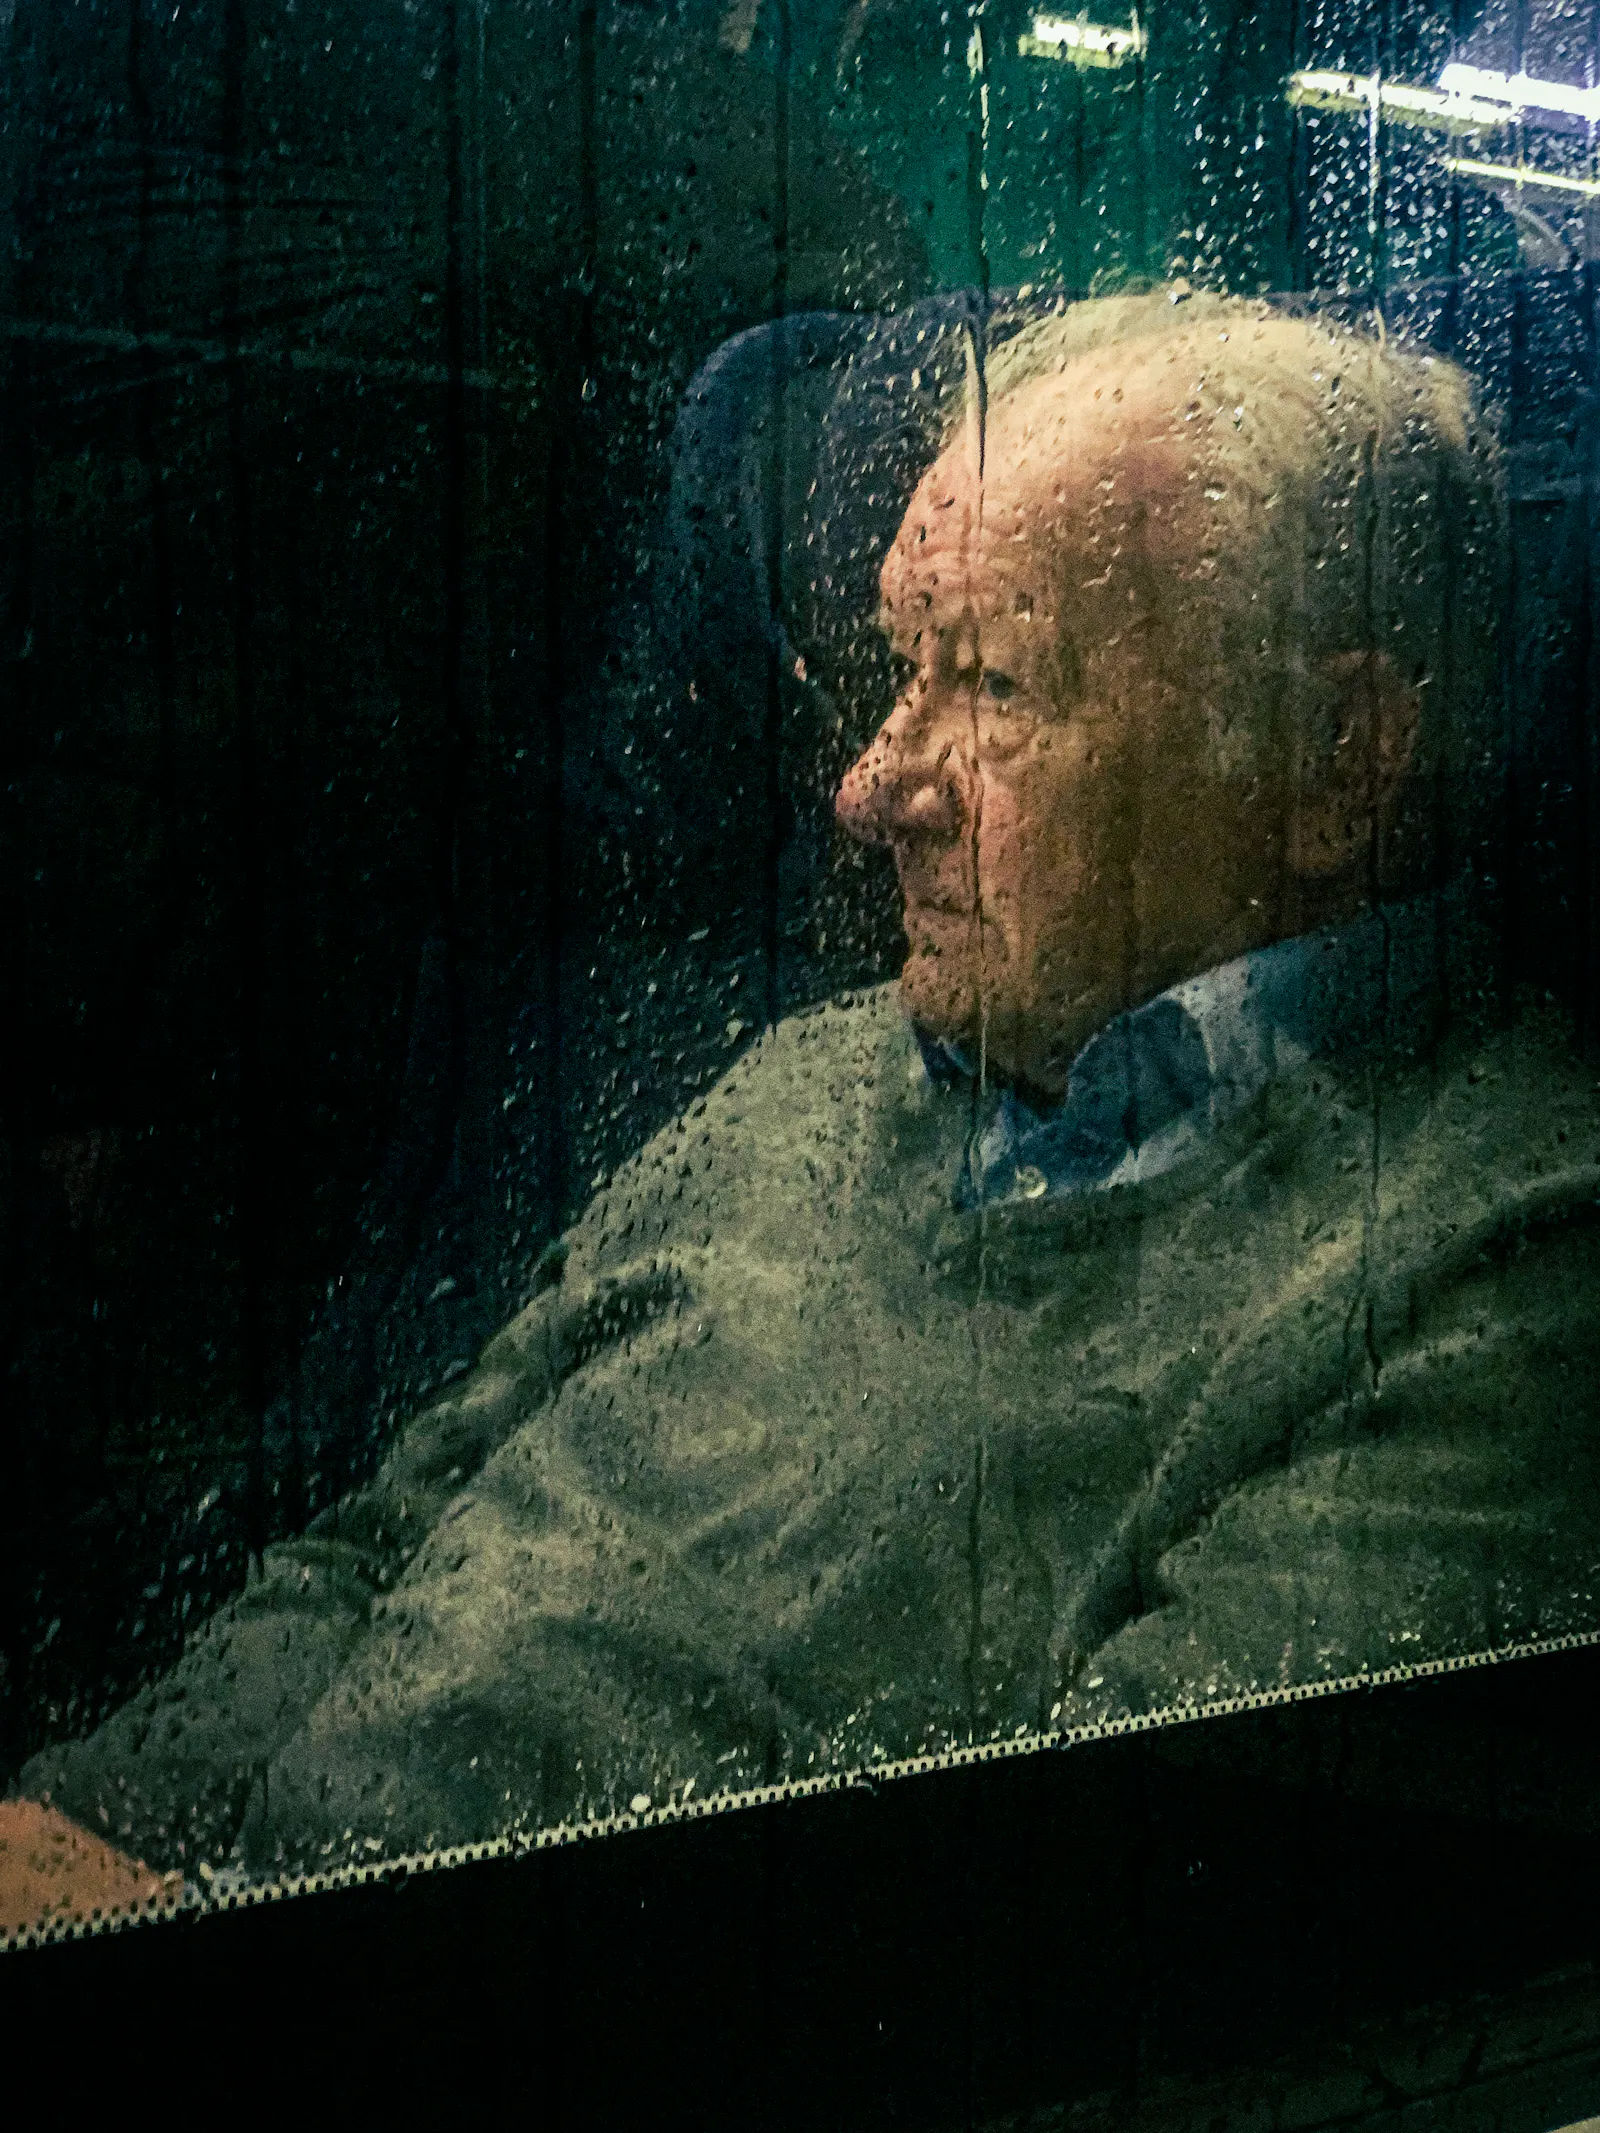 Ein älterer Herr sitzt hinter einer verregneten Glasscheibe und schaut etwas grimmig.